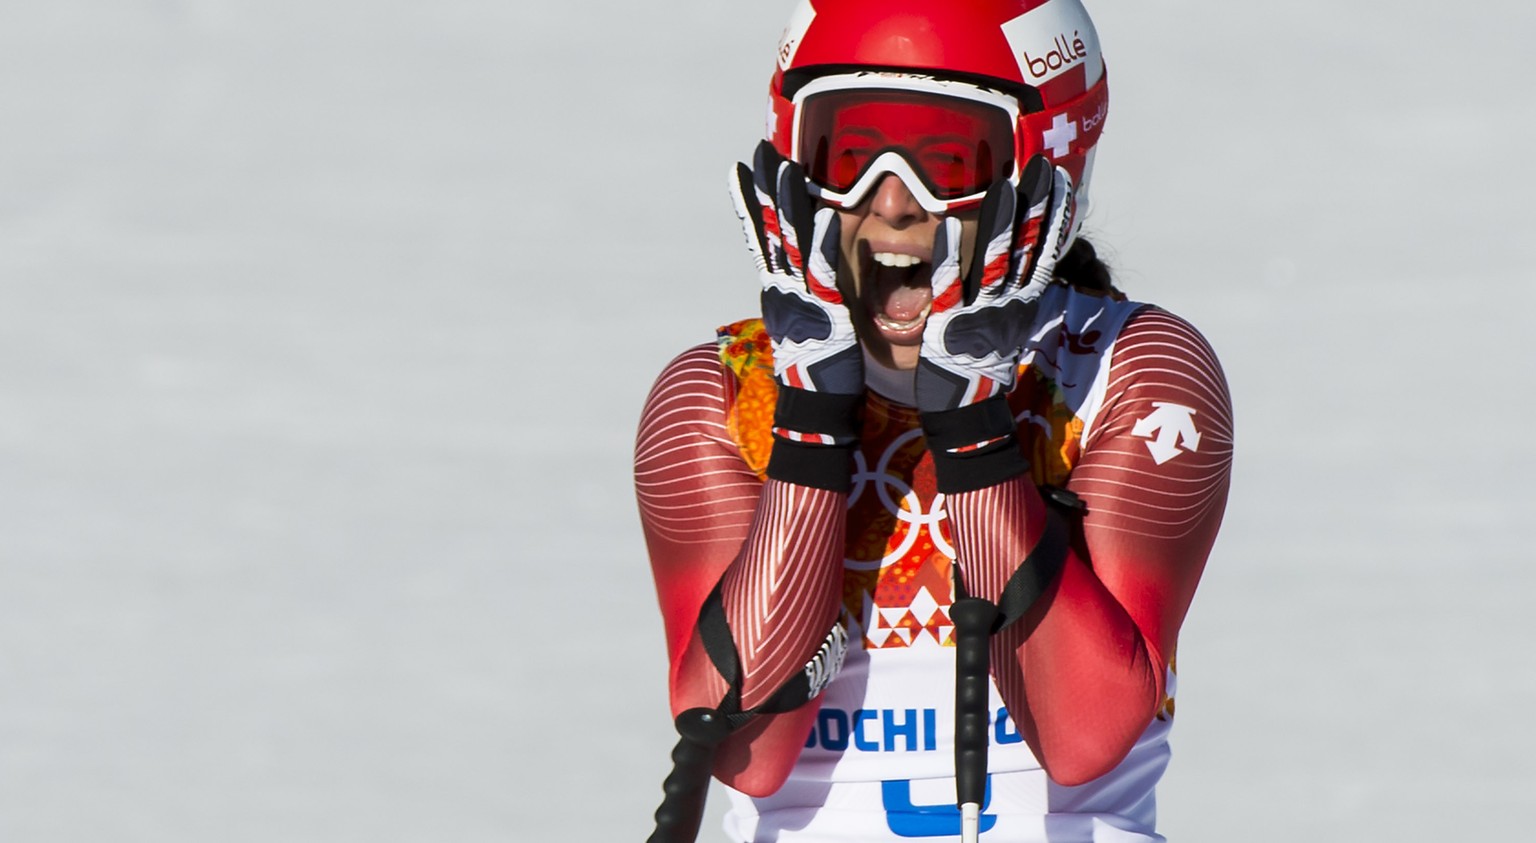 Der Eintrag in die Geschichtsbücher: Dominique Gisin wird 2014 in Sotschi Olympiasiegerin in der Abfahrt.